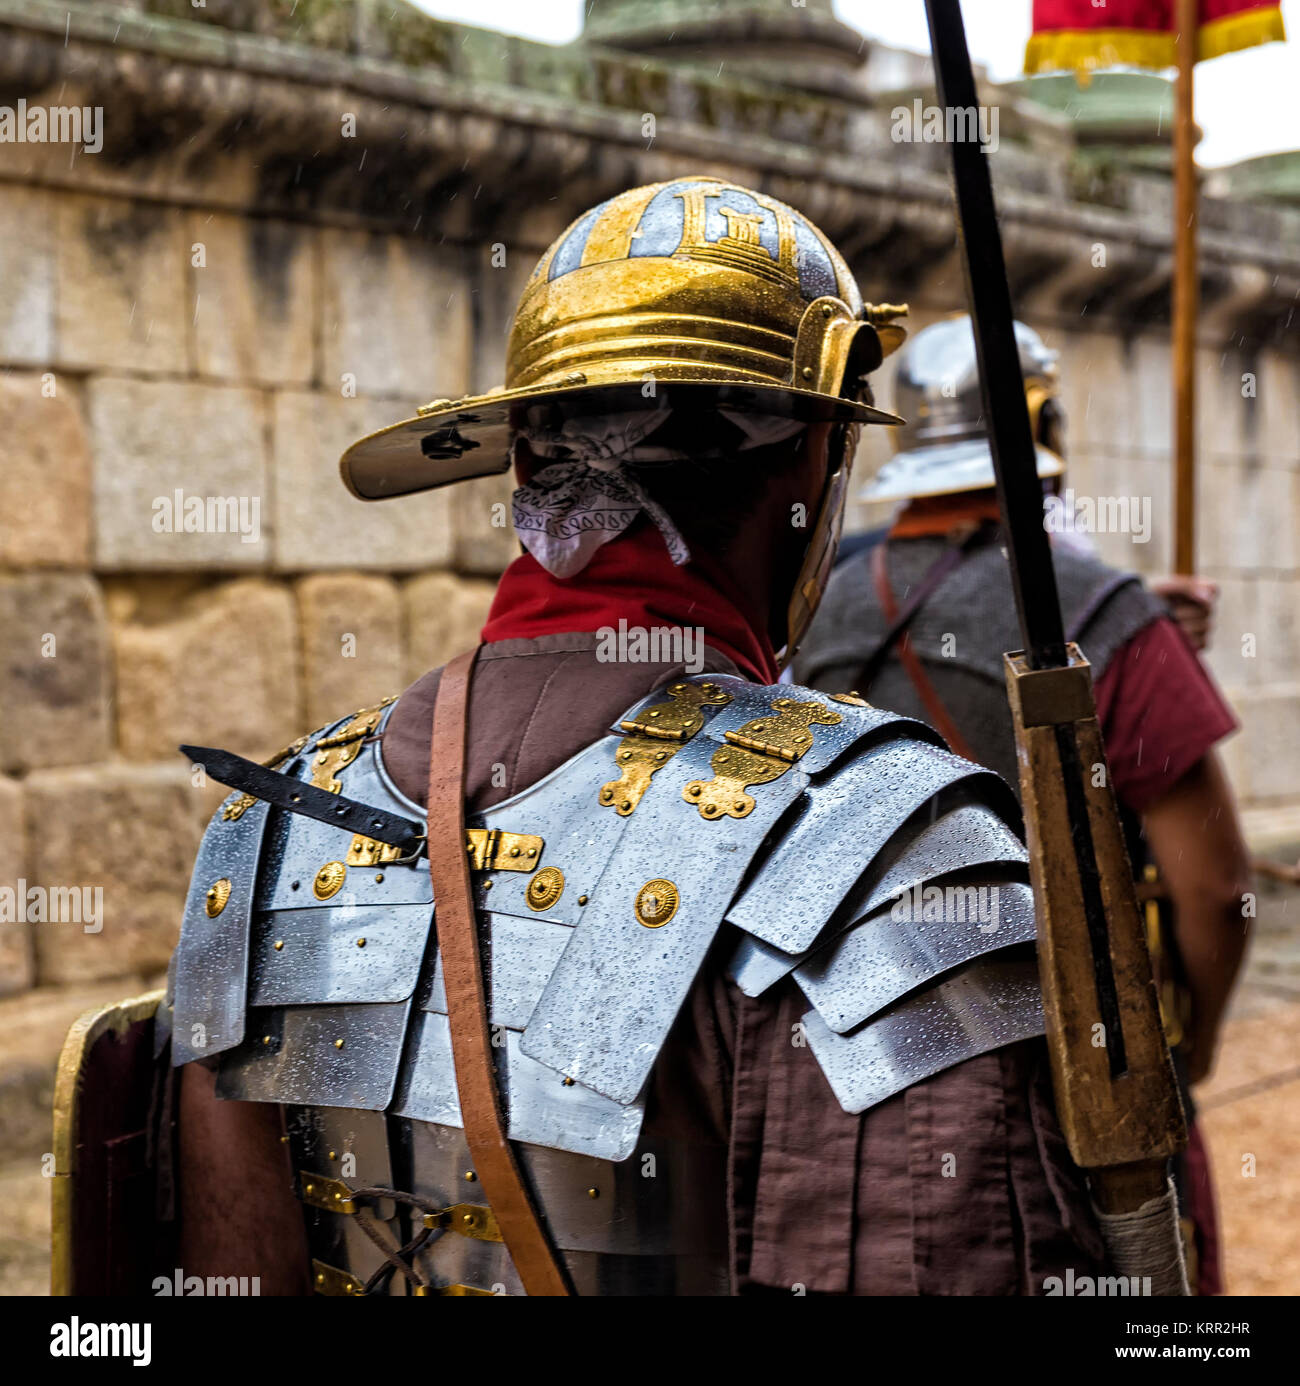 Mérida, Spagna - 27 Settembre 2014: persone vestiti con i costumi dei legionari romani nel primo secolo, coinvolti nella rievocazione storica. Questo hol Foto Stock